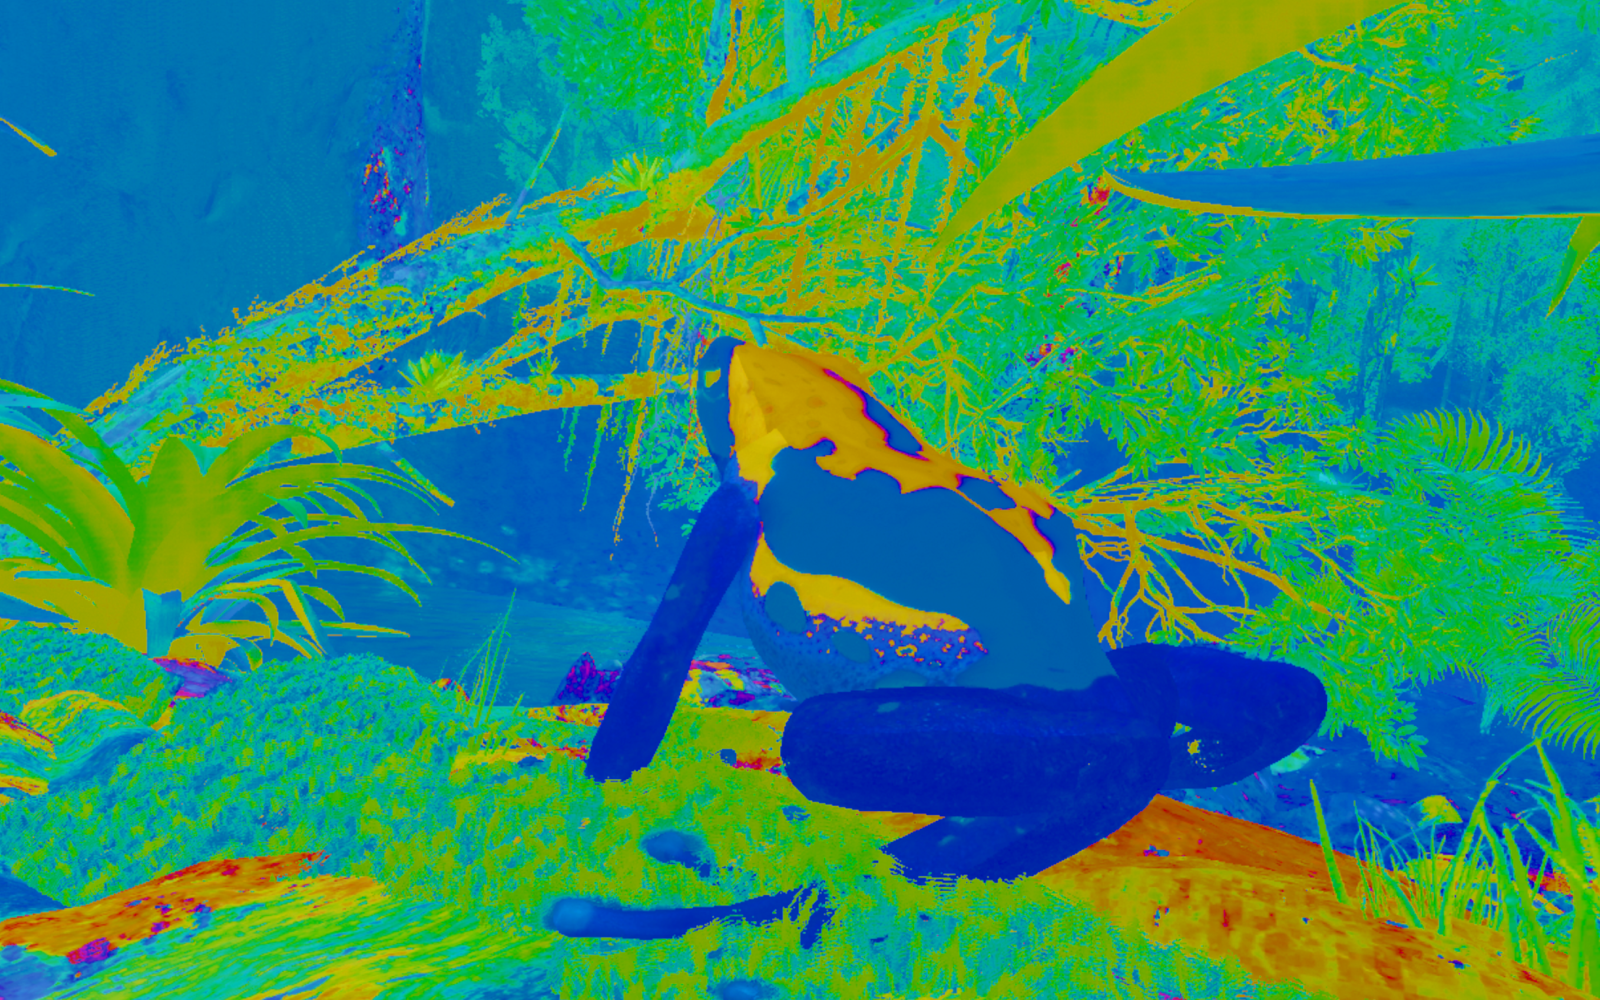 Grüne, blaue und gelbe Farben zeigen einen Frosch in natürlicher Umgebung